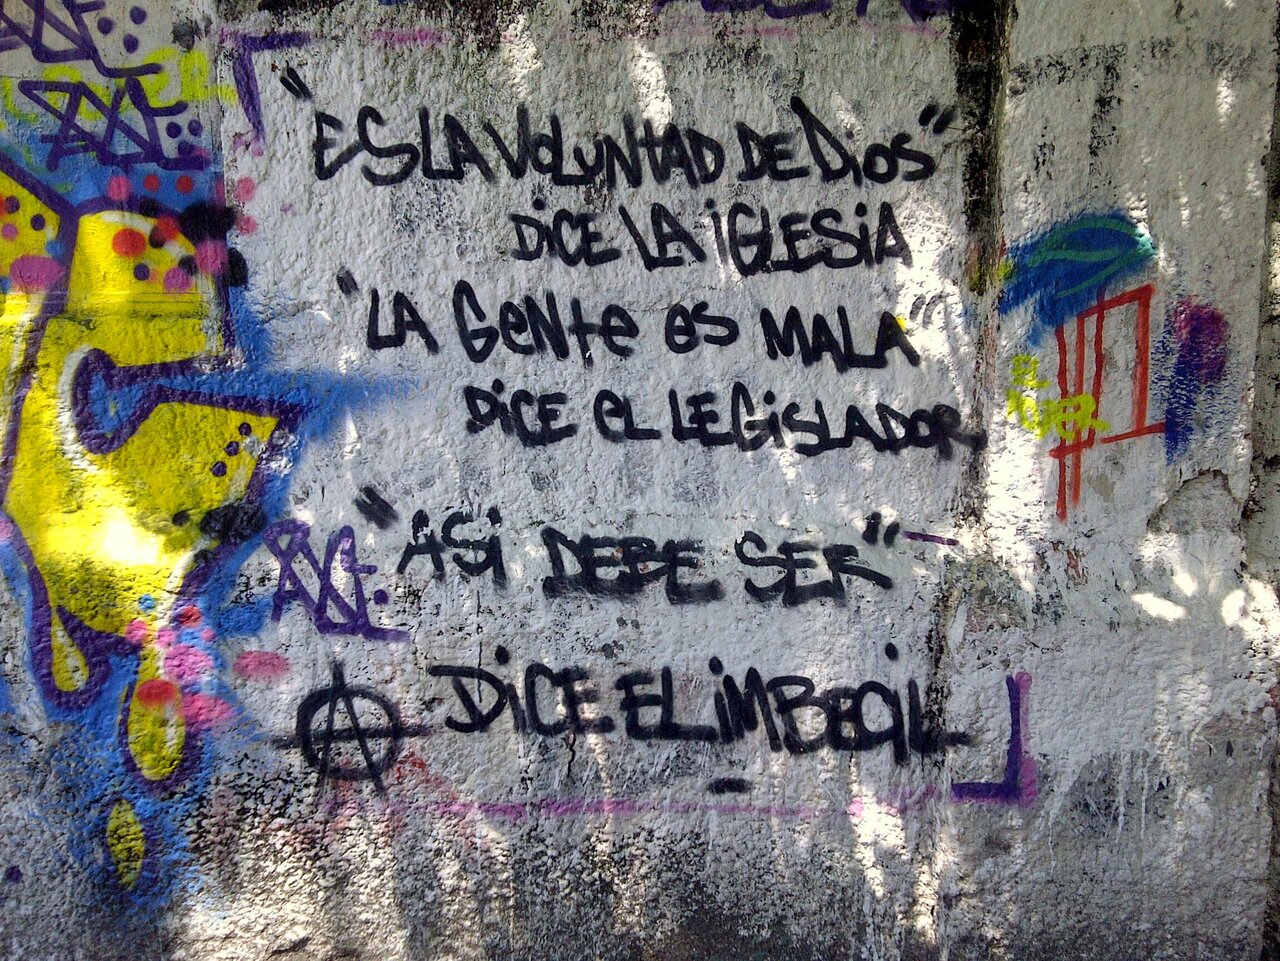 #Graffiti de hoy: «Es la voluntad de Dios, dice la Iglesia » Calles 3y45 #LaPlata #Argentina #StreetArt #UrbanArt https://t.co/0Pf2cq2QQt